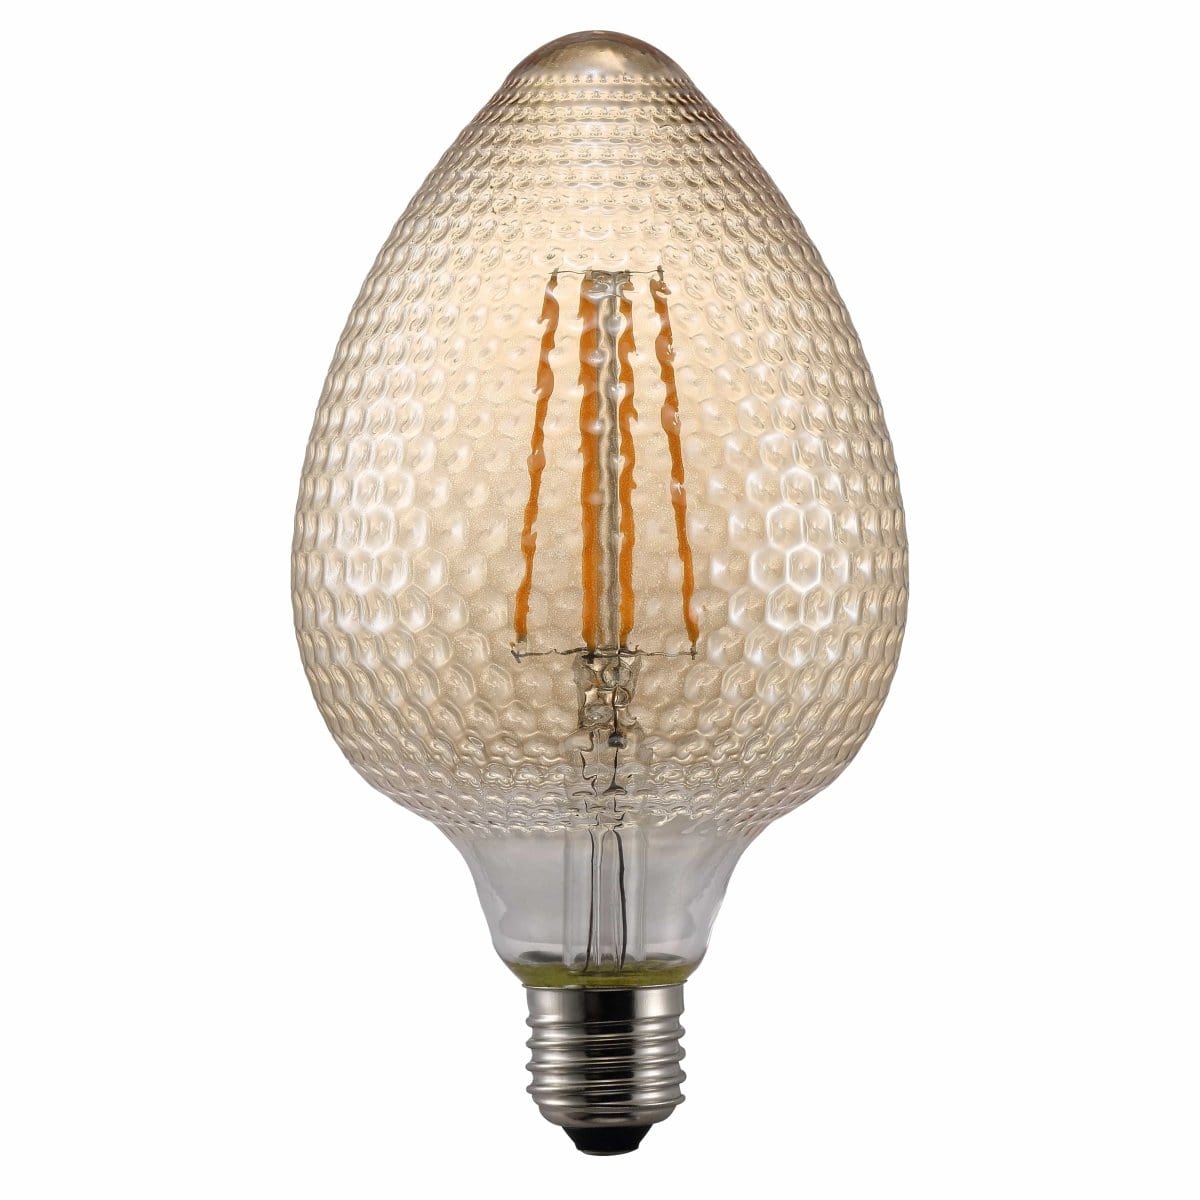 Heavenly Chandeliers Light Bulbs Decorative Avra E27 Nut shaped light bulb, amber